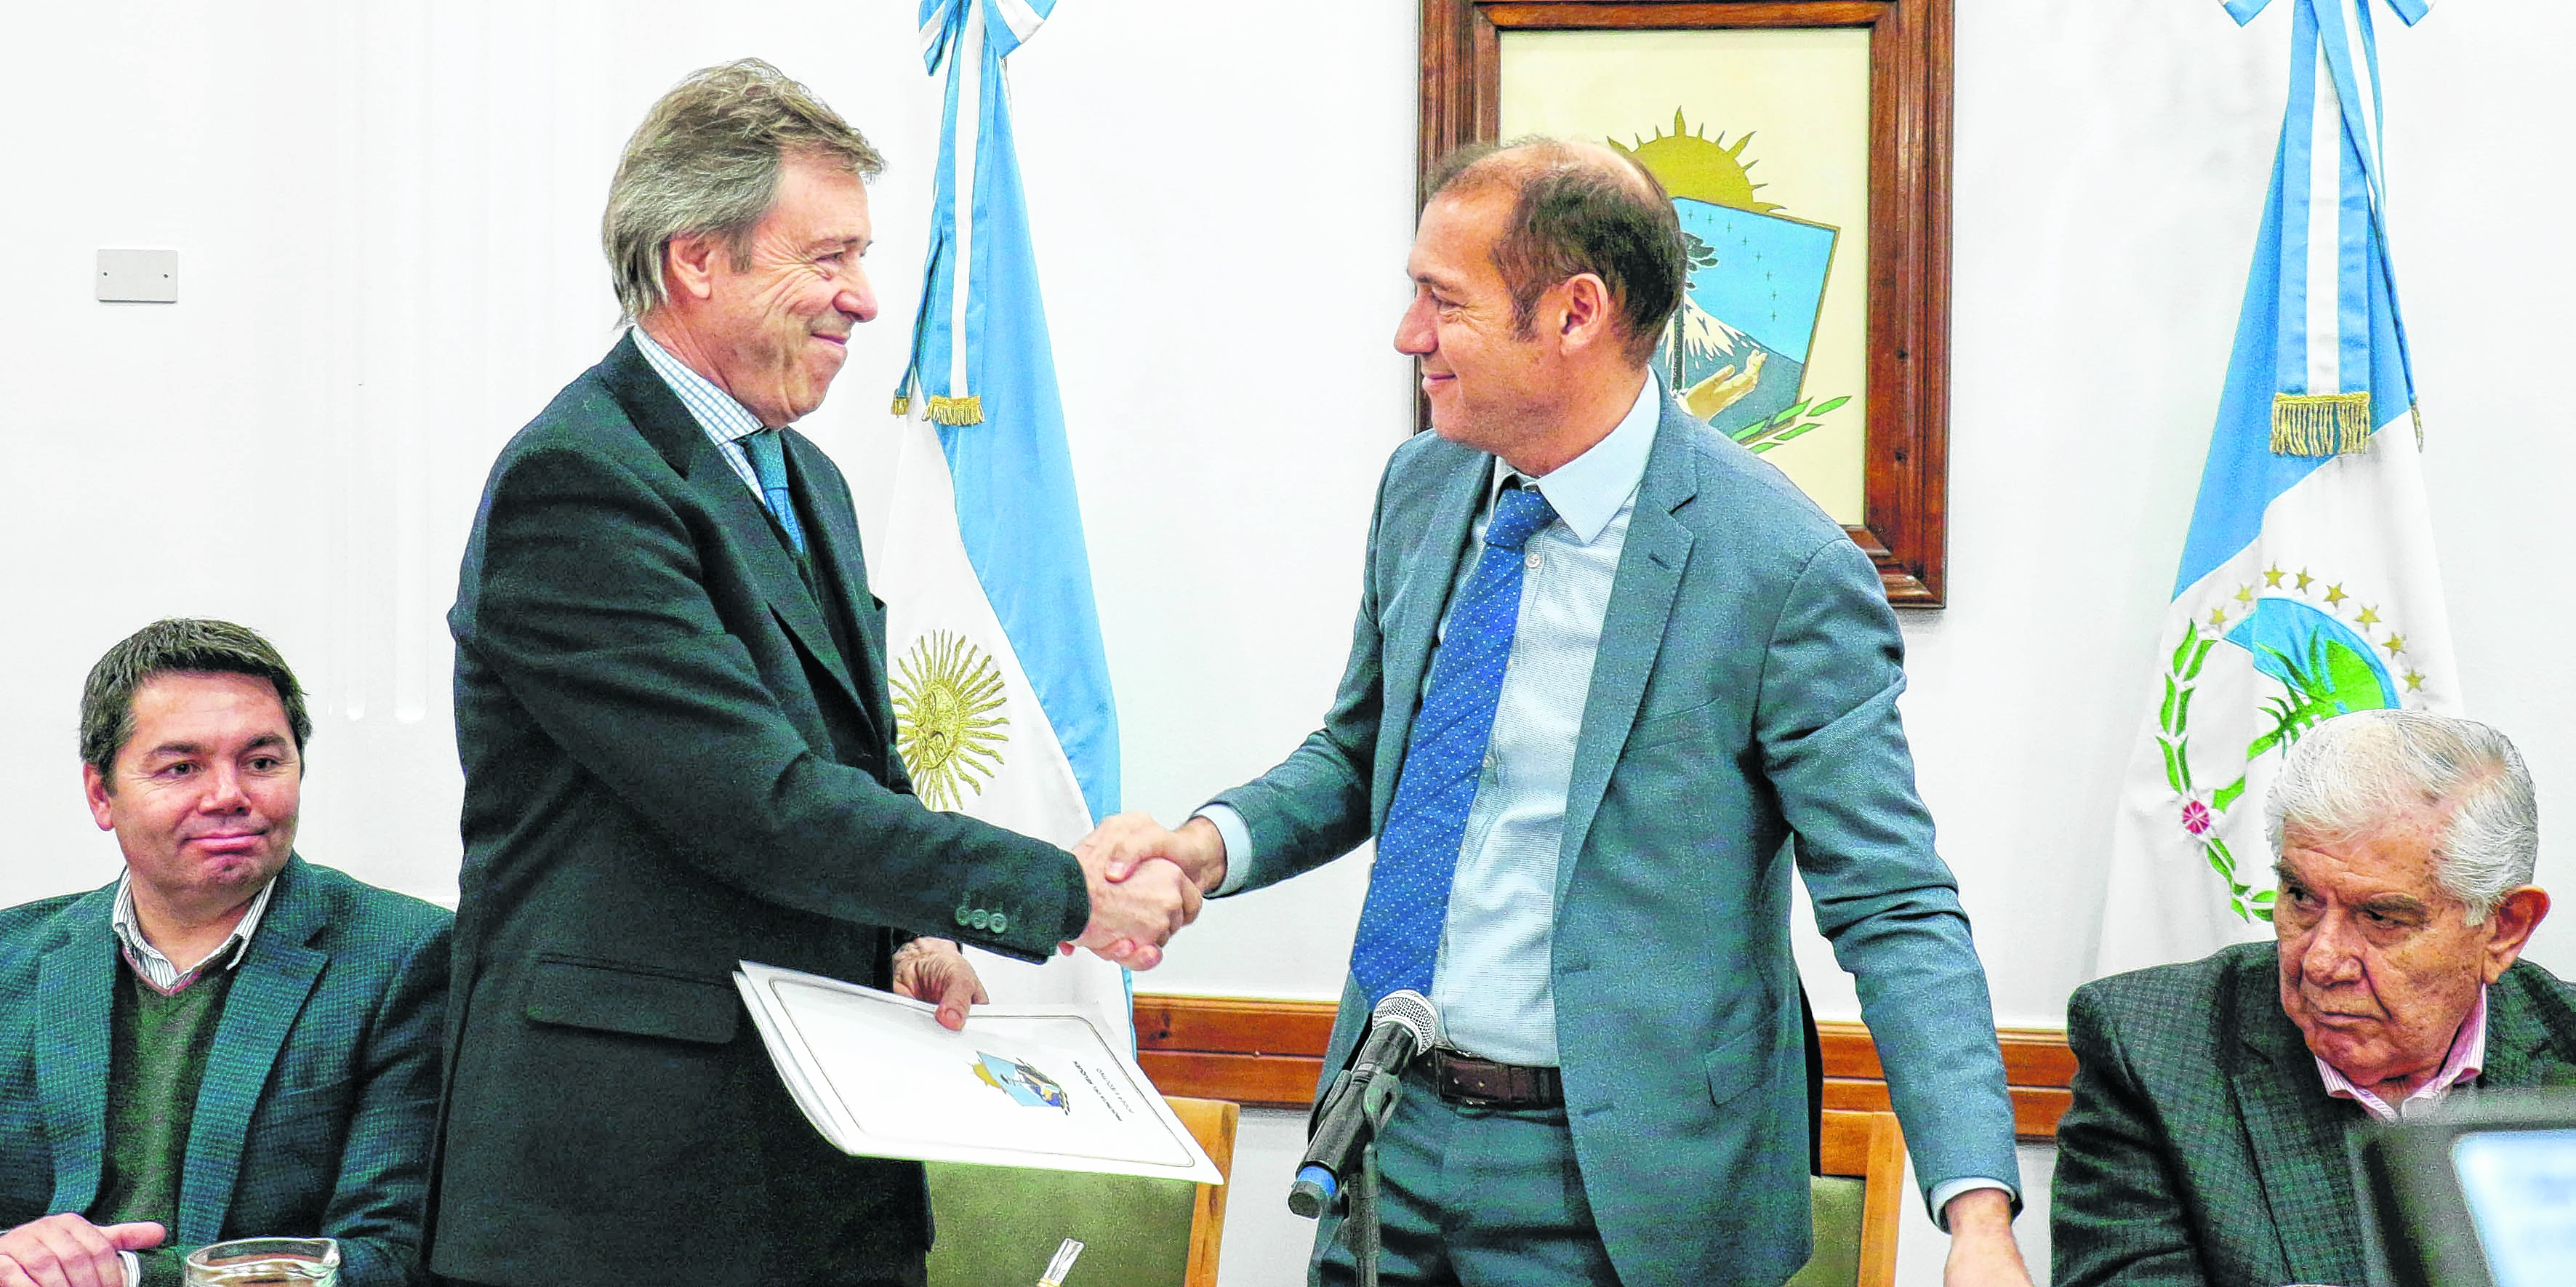 La provincia del Neuquén suma dos concesiones no convencionales
La petrolera del Grupo Techint redobló la apuesta y se quedó con dos nuevas concesiones para la explotación de hidrocarburos.